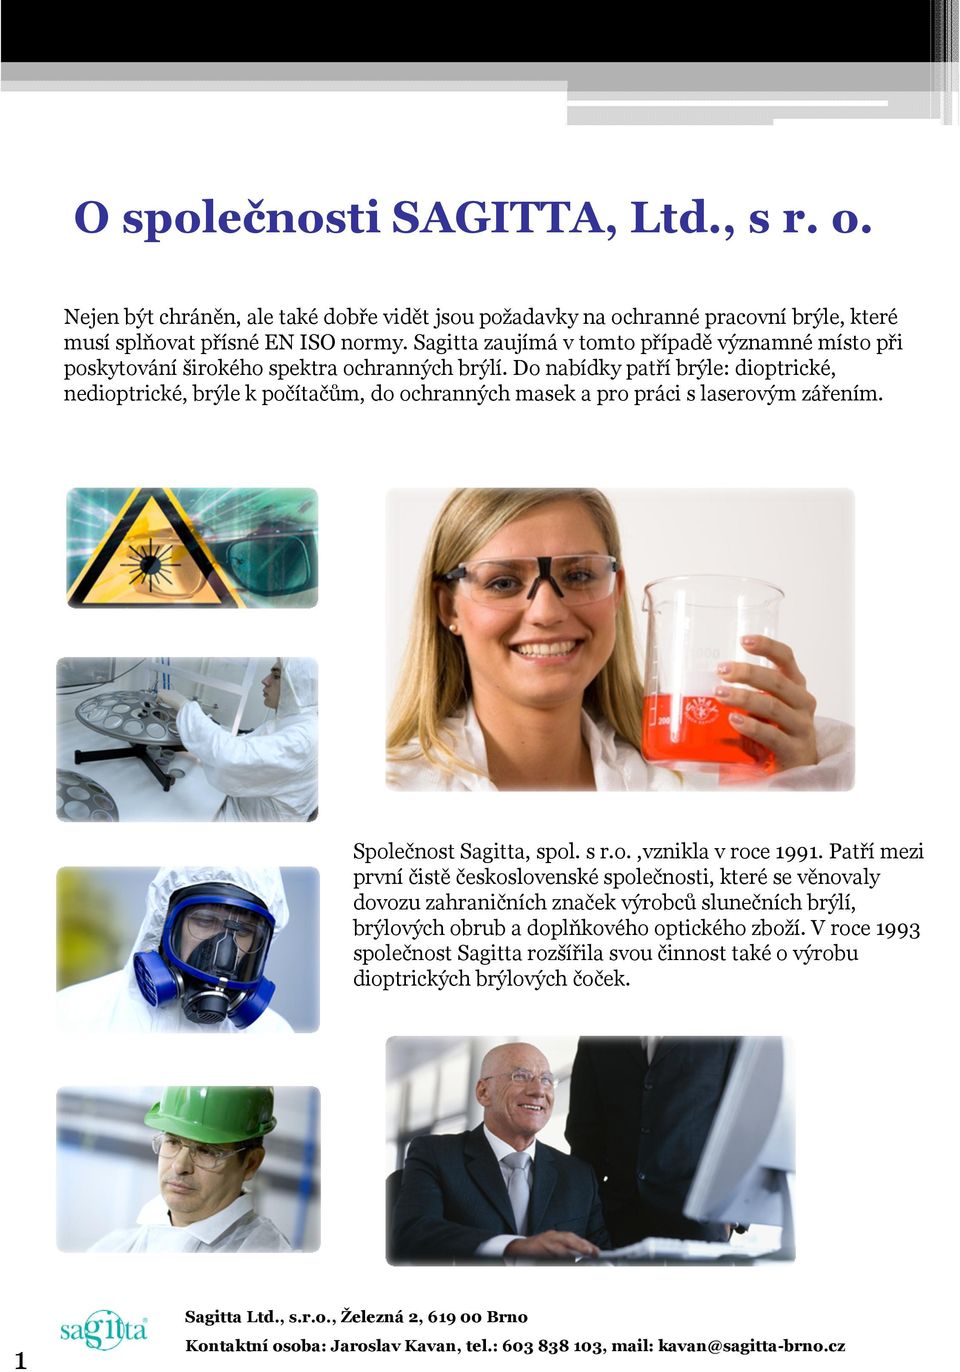 Do nabídky patří brýle: dioptrické, nedioptrické, brýle k počítačům, do ochranných masek a pro práci s laserovým zářením. Společnost Sagitta, spol. s r.o.,vznikla v roce 1991.